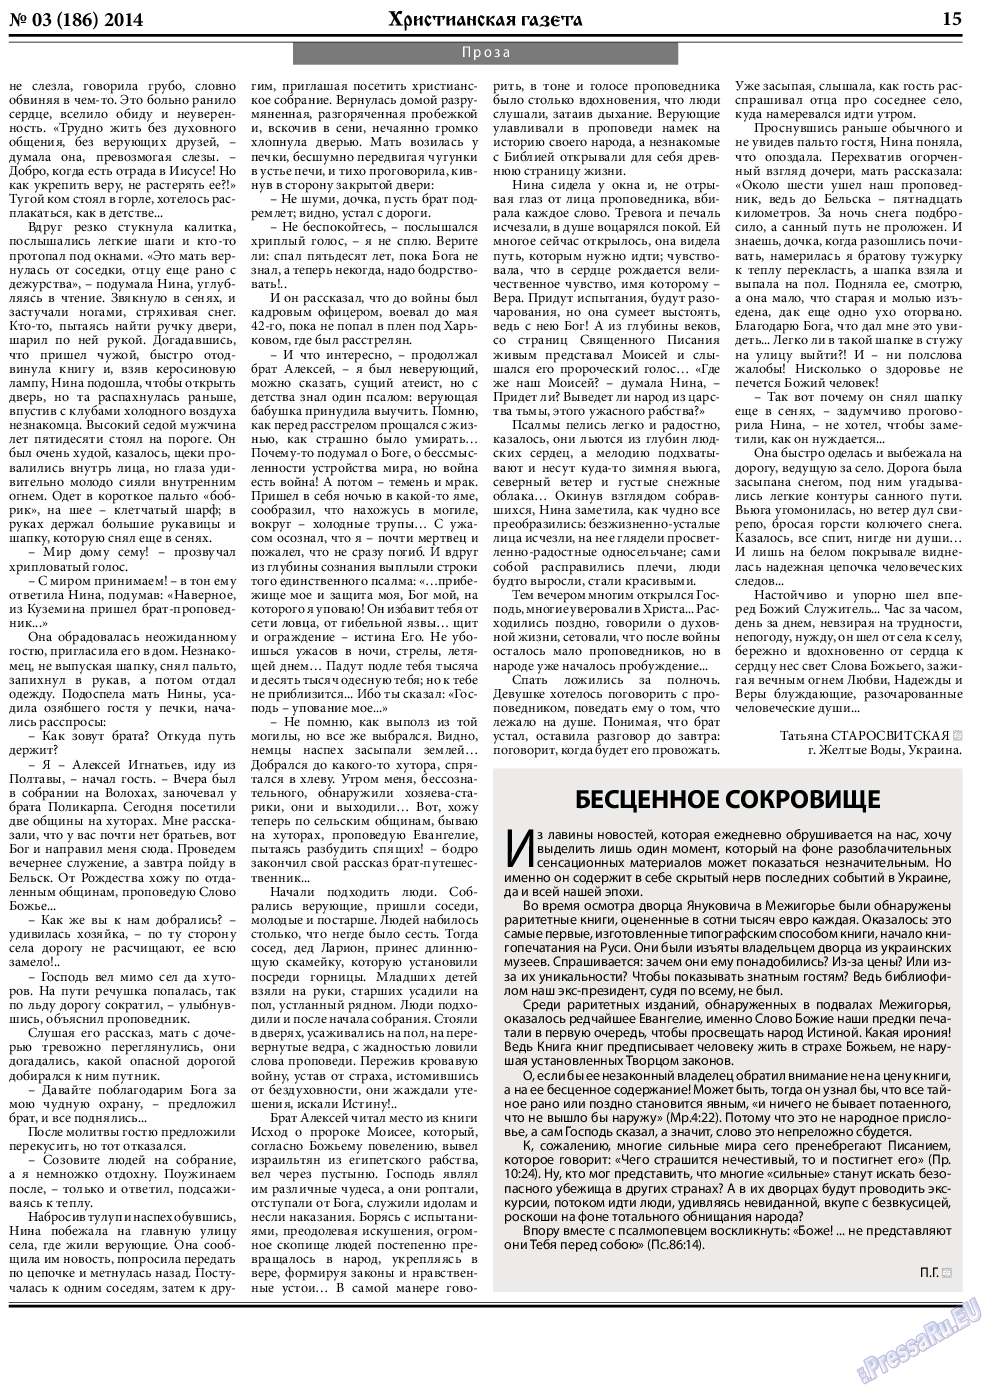 Христианская газета, газета. 2014 №3 стр.23